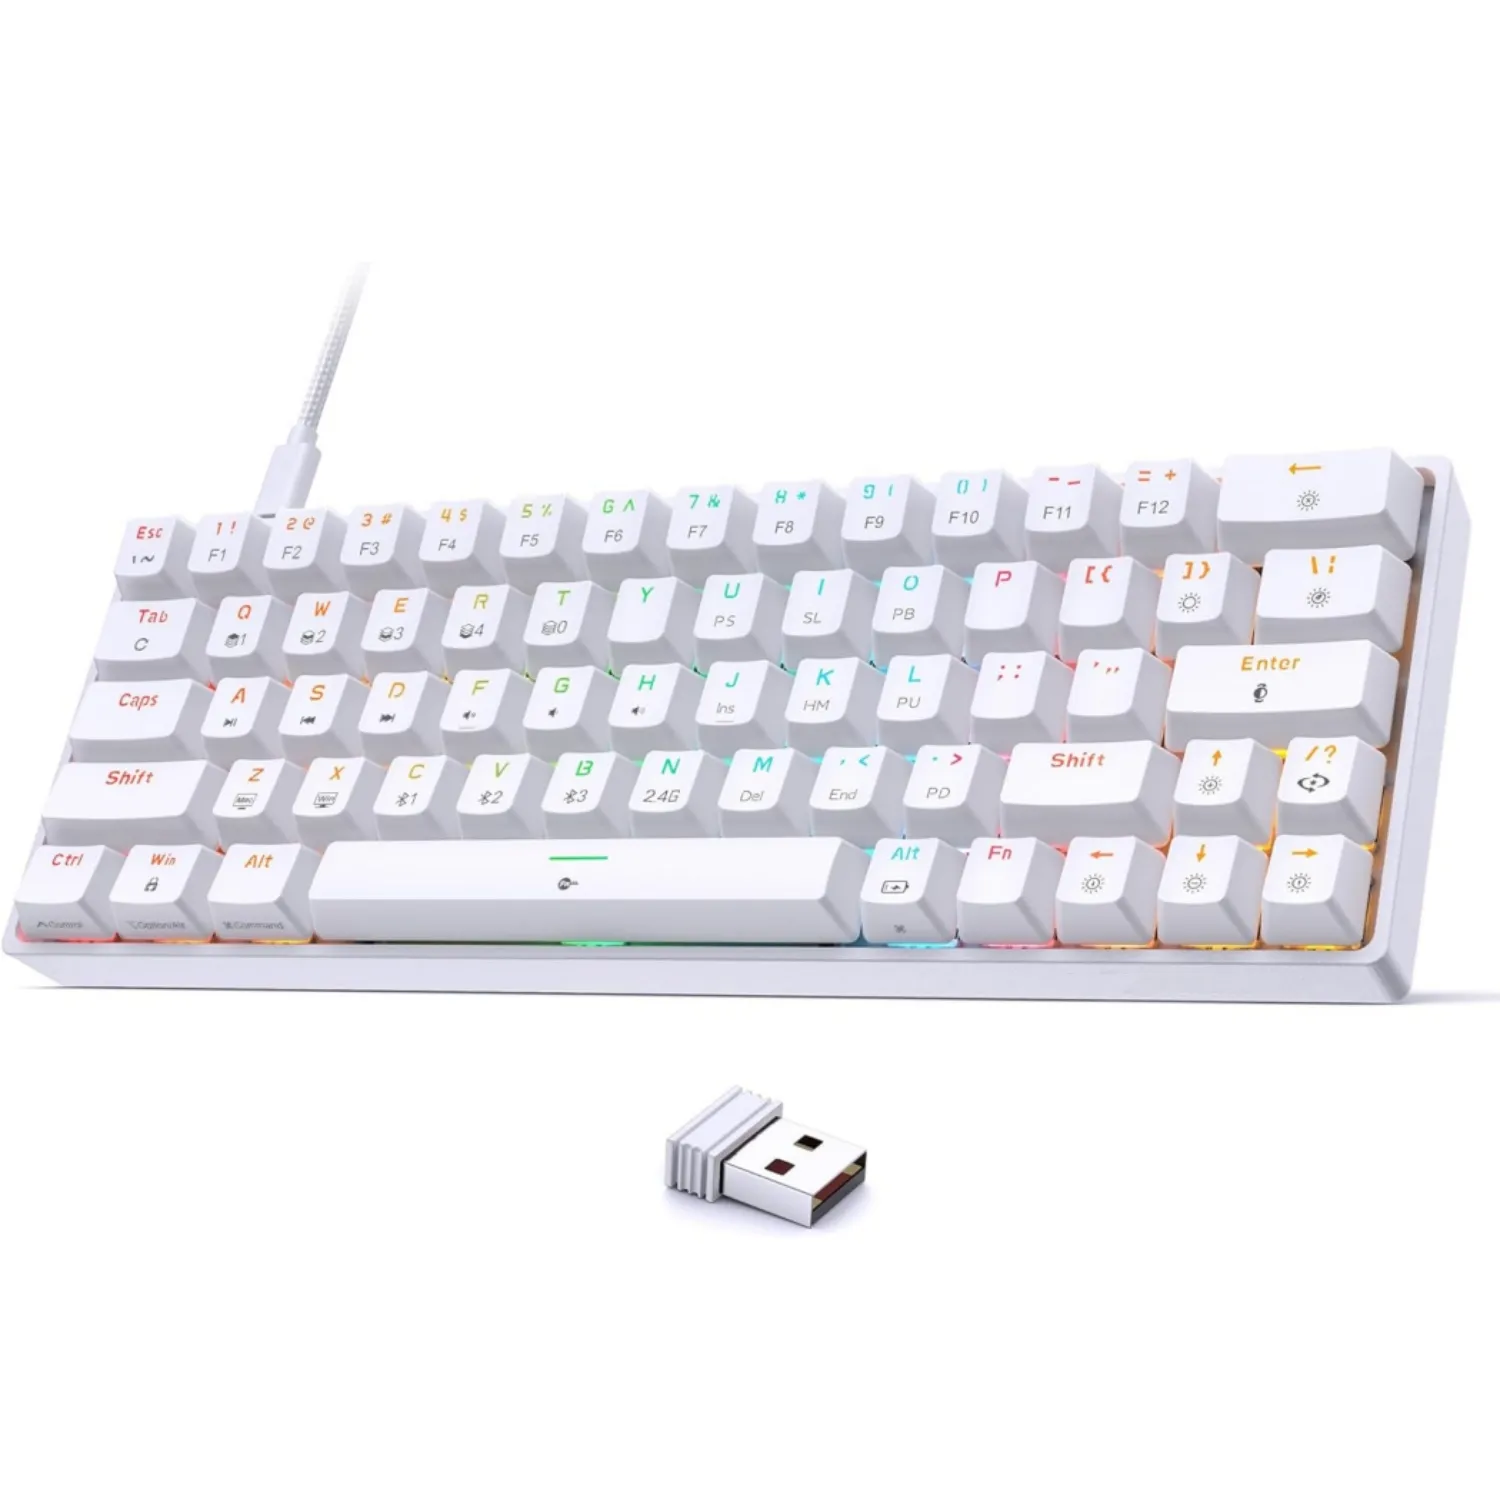 لوحة مفاتيح للألعاب لاسلكية 60% RGB Kit مع إضاءة خلفية وخاصية الاتصال بـ USB نوع لوحة مفاتيح من خاصية الاتصال بـ USB